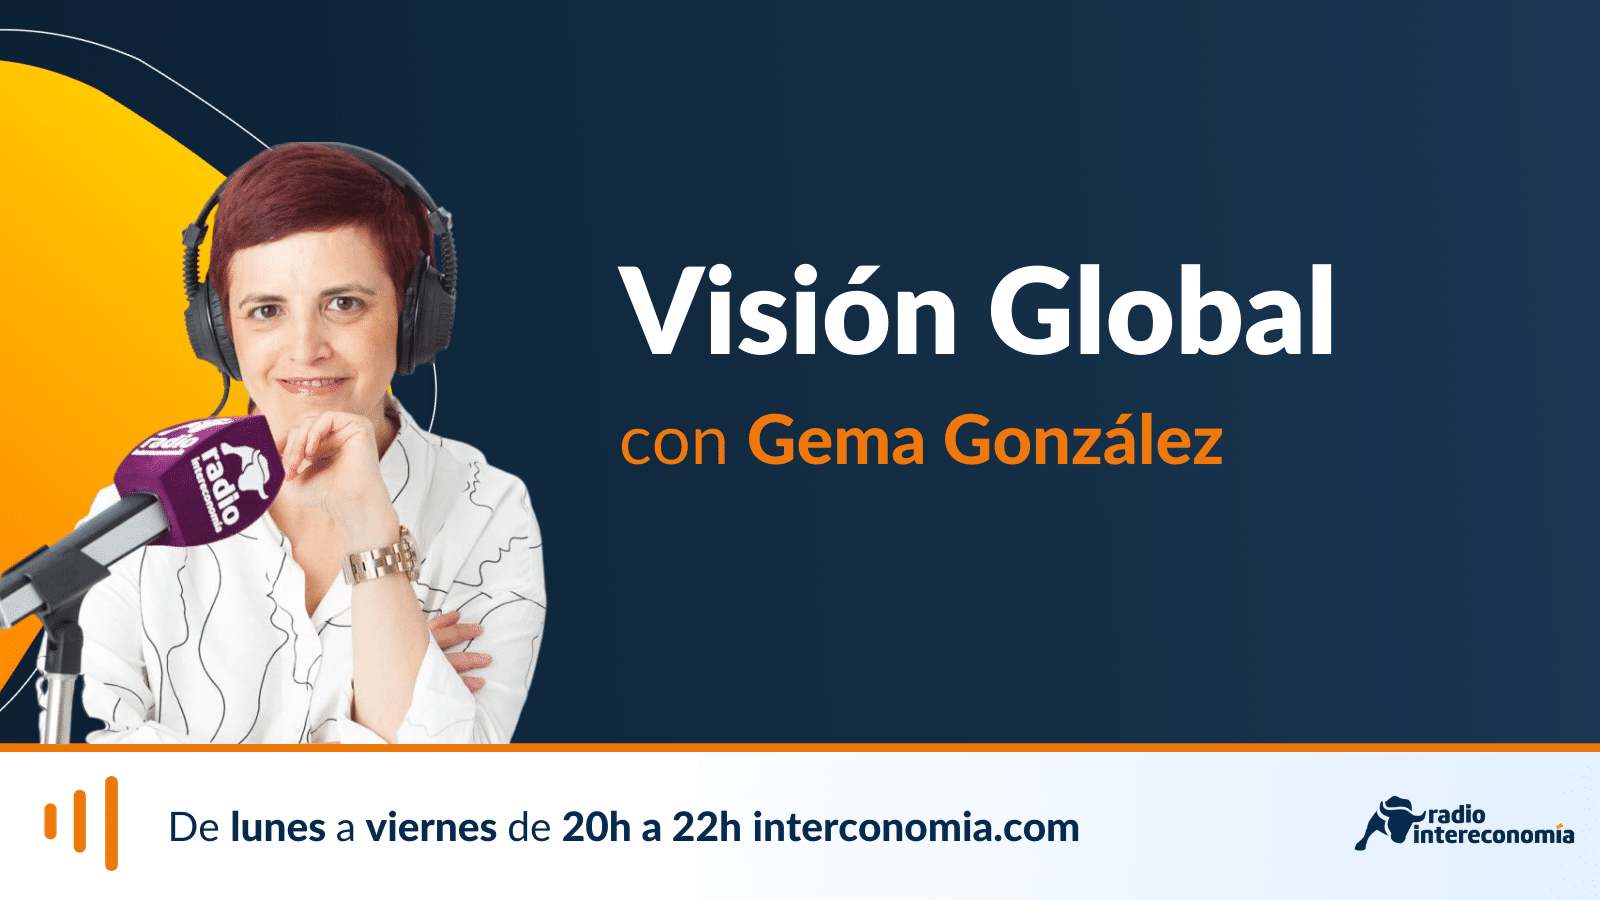 Visión Global 21h GPM Gestión Activa Alcyon, UNED, Actualidad Económica y The Values Corner 25/10/2021